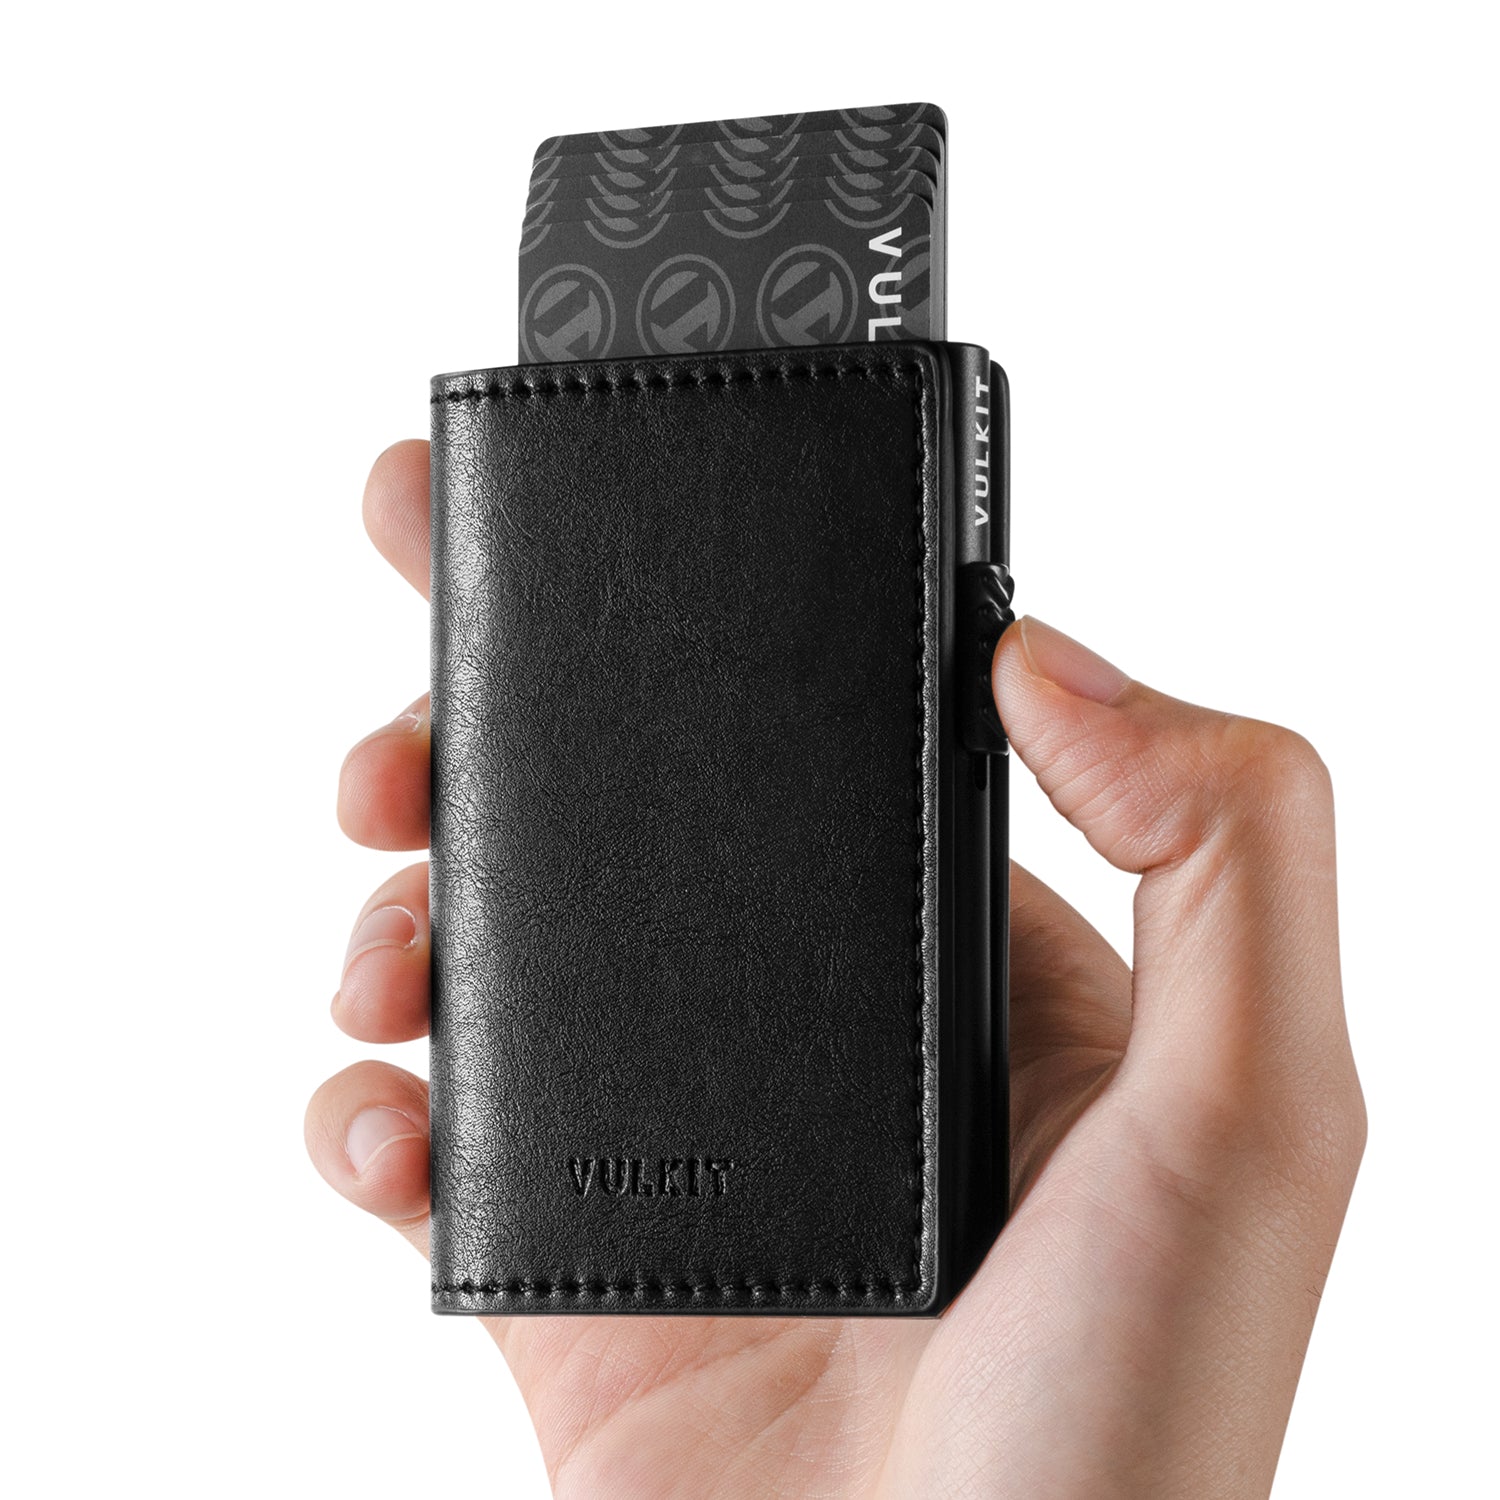  ファイン(Fine) FIN-980PL Compact Wallet with Reel